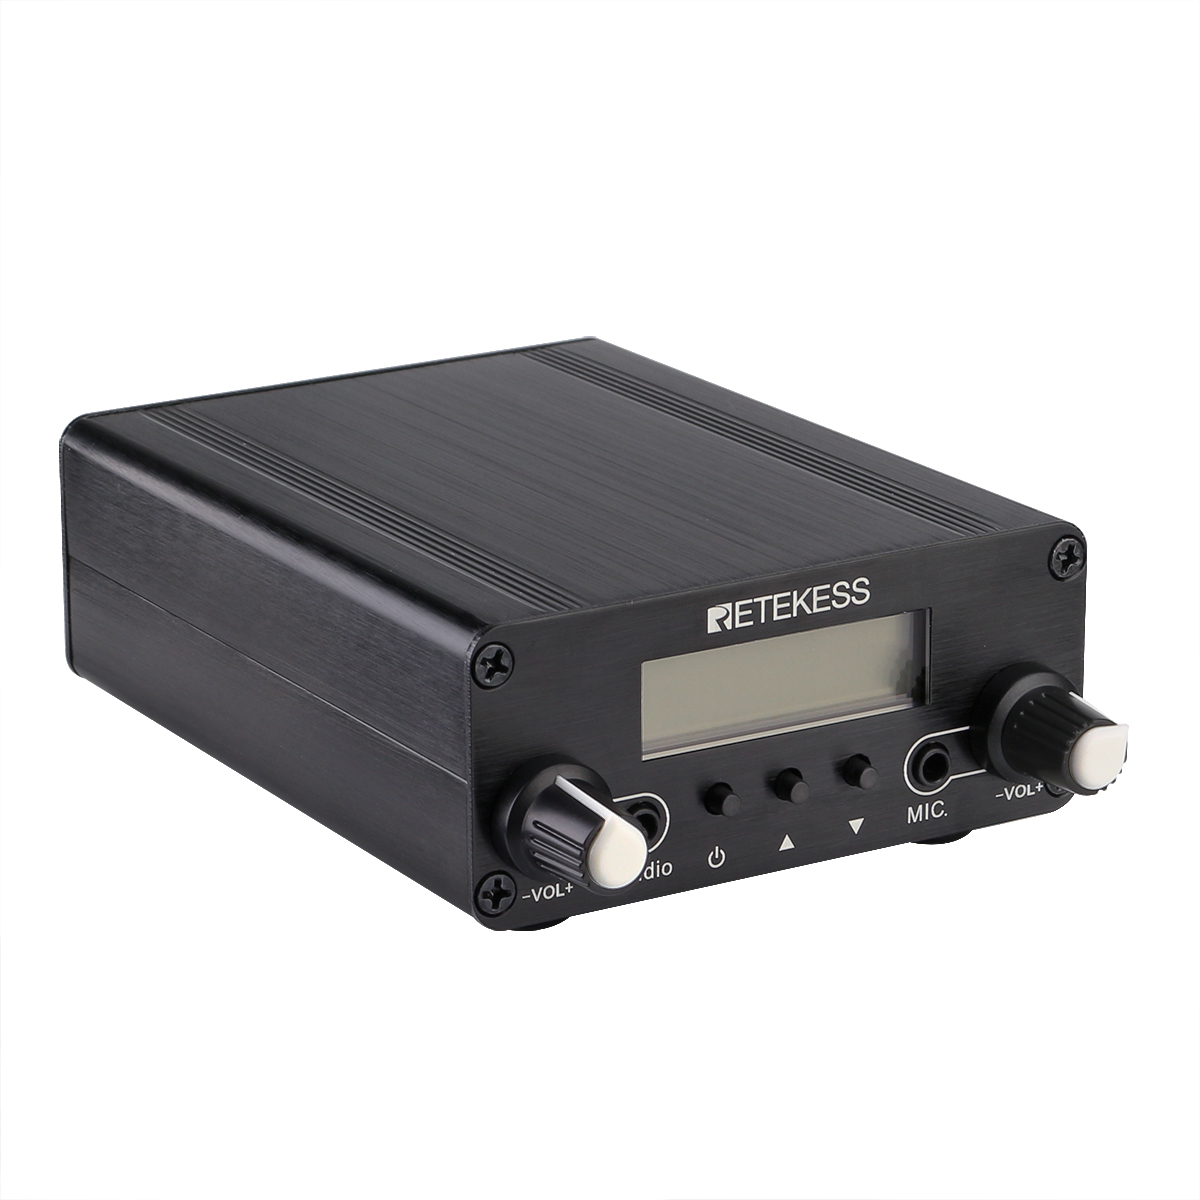 Retekess-TR508-FM-Transmitter-For-Drive-in-Church-FM-Transmitter-Wireless-Broadcast-Stereo-Station-L-1681579-7